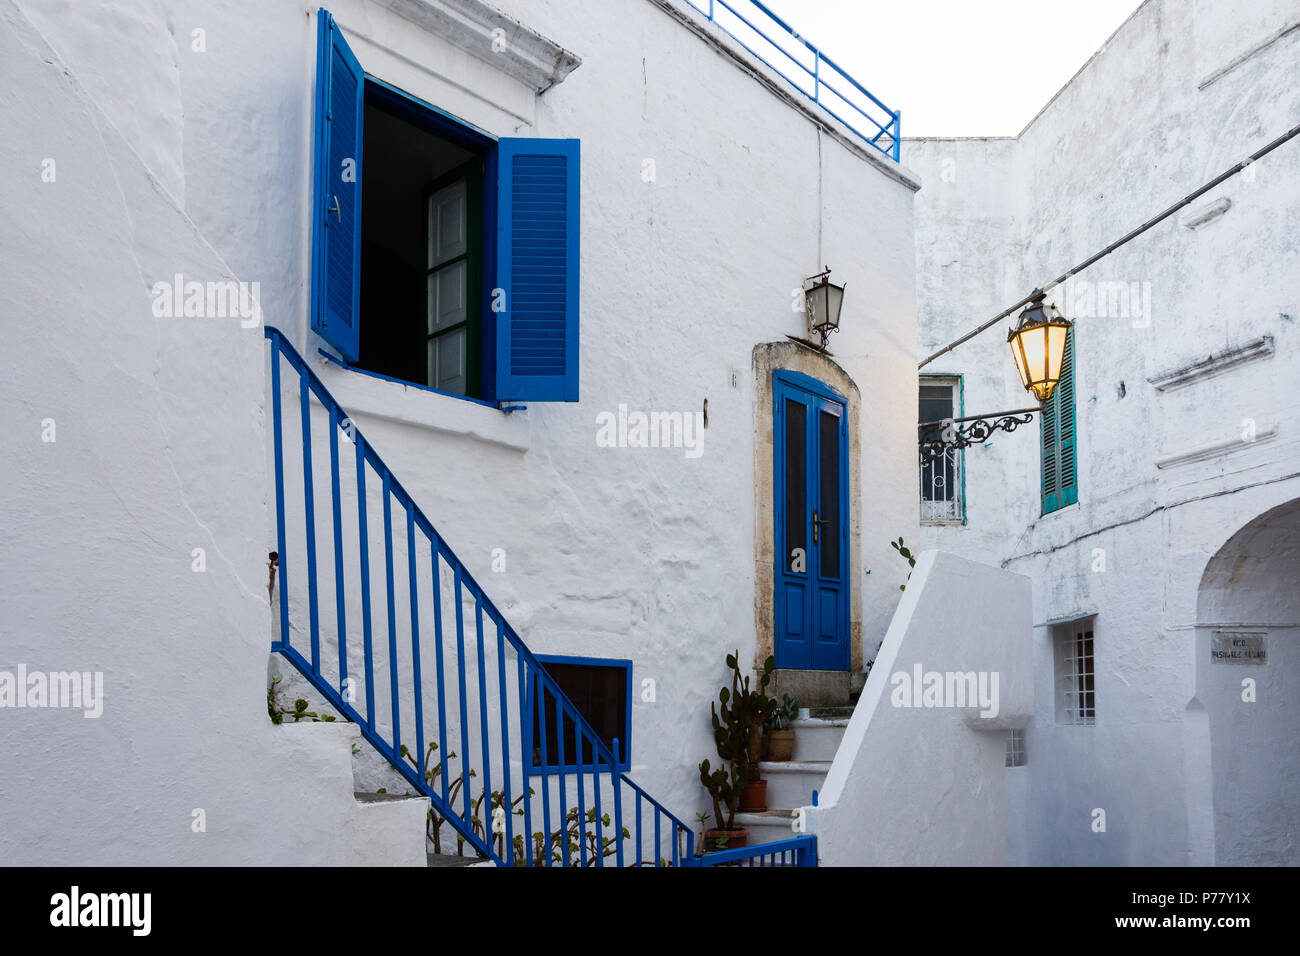 Ostuni, Italia - Agosto 11, 2017: Vista de una calle estrecha con una puerta y ventana azul azul en el romántico casco antiguo de Ostuni (Apulia, Italia), Foto de stock